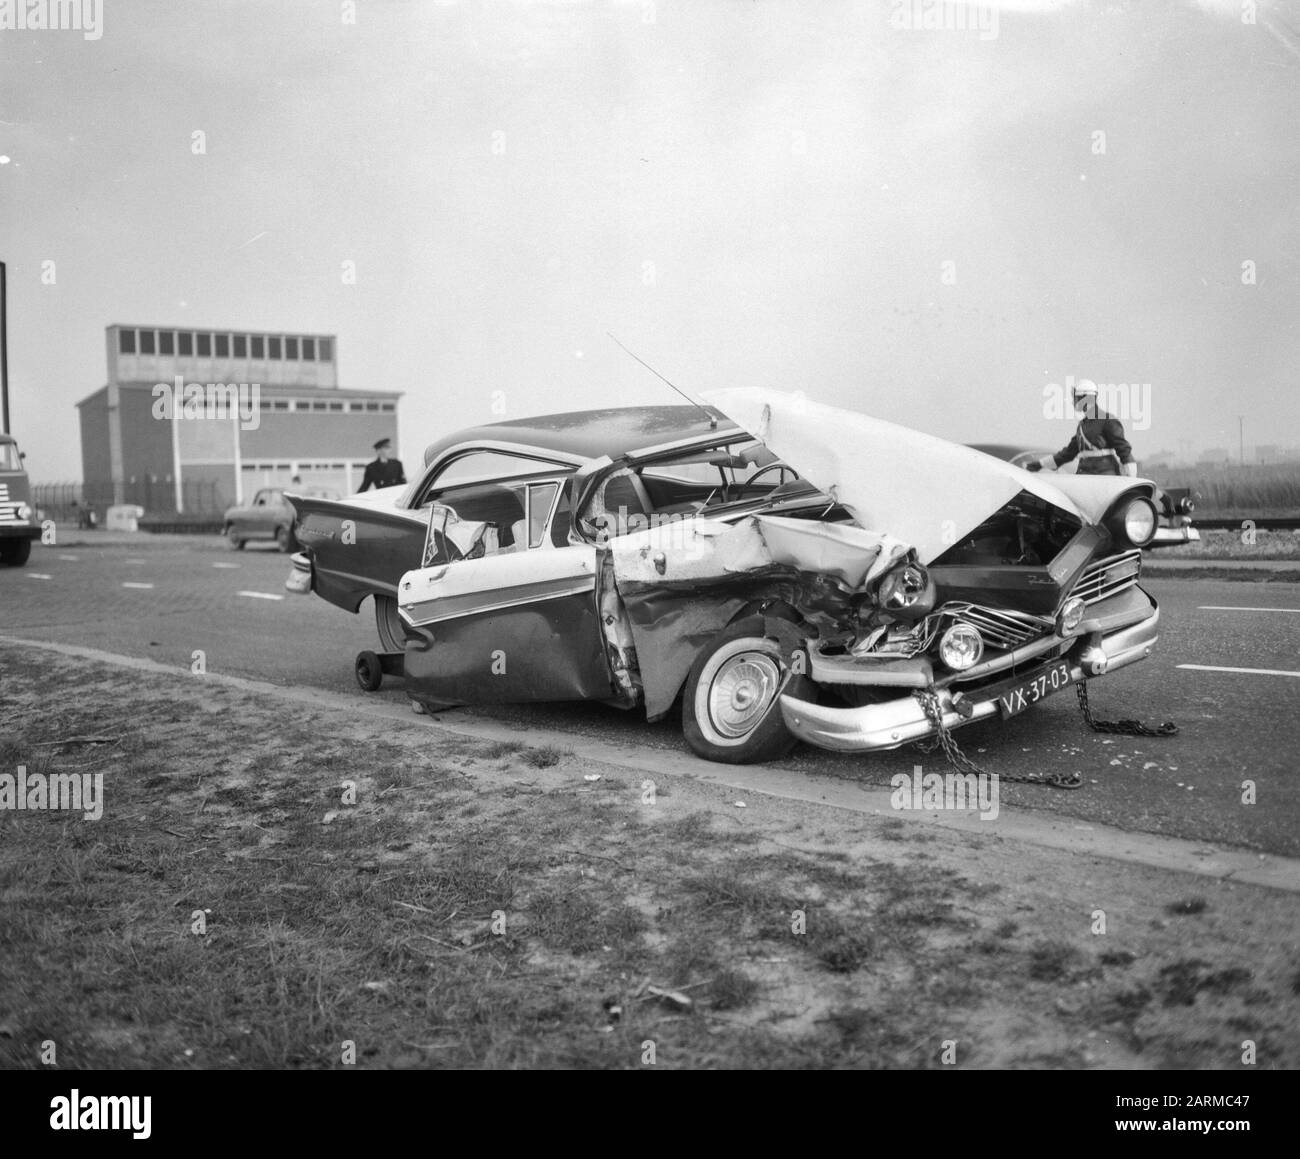 Incidente mortale all'automobile a Hemweg in Amsterdam Data: 26 novembre 1959 luogo: Amsterdam, Noord-Holland Parole Chiave: Auto-incidente Foto Stock